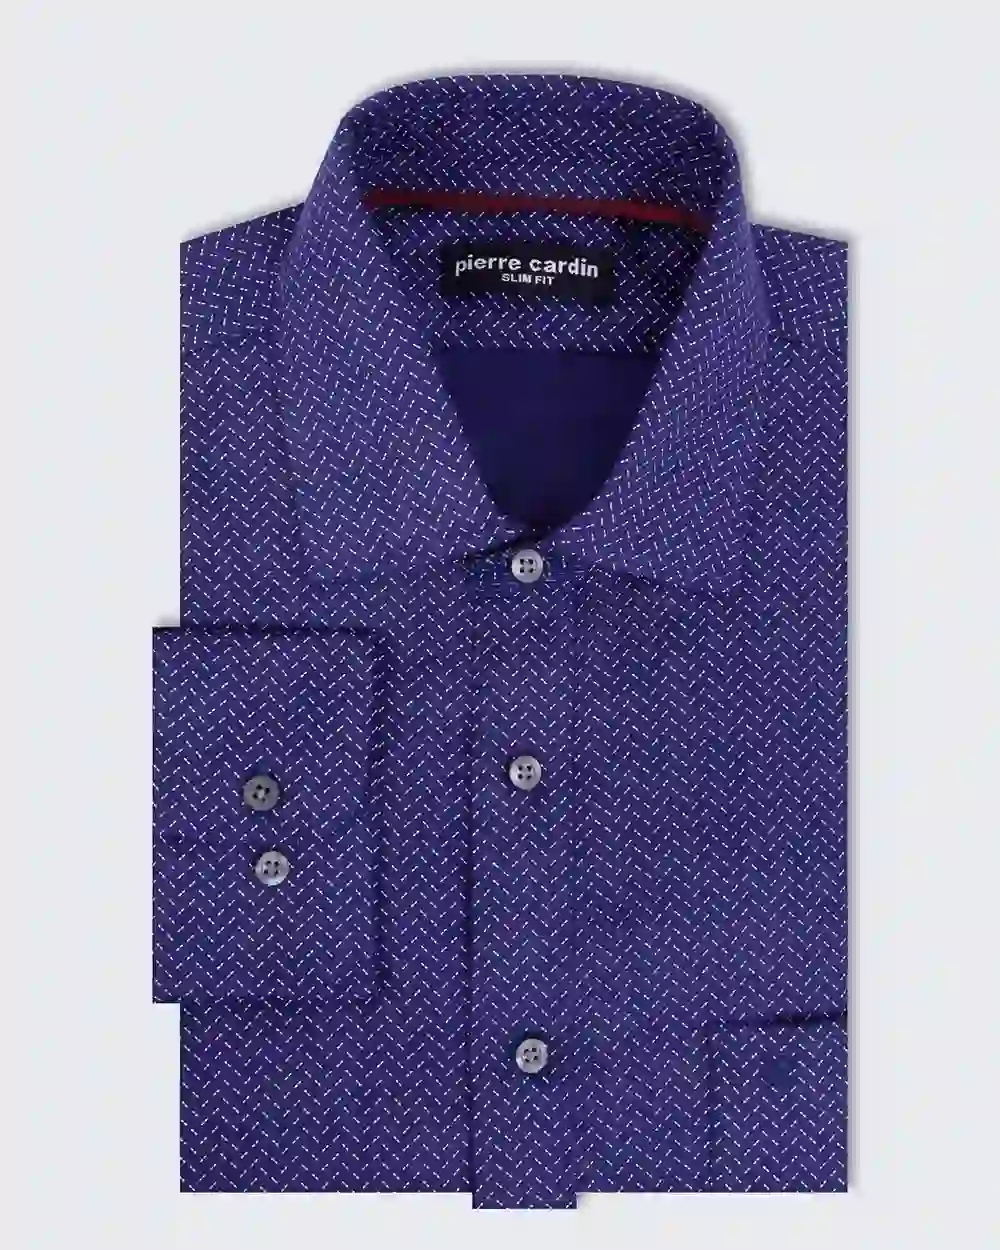 Camisa estampada pique slim fit manga larga color azul
